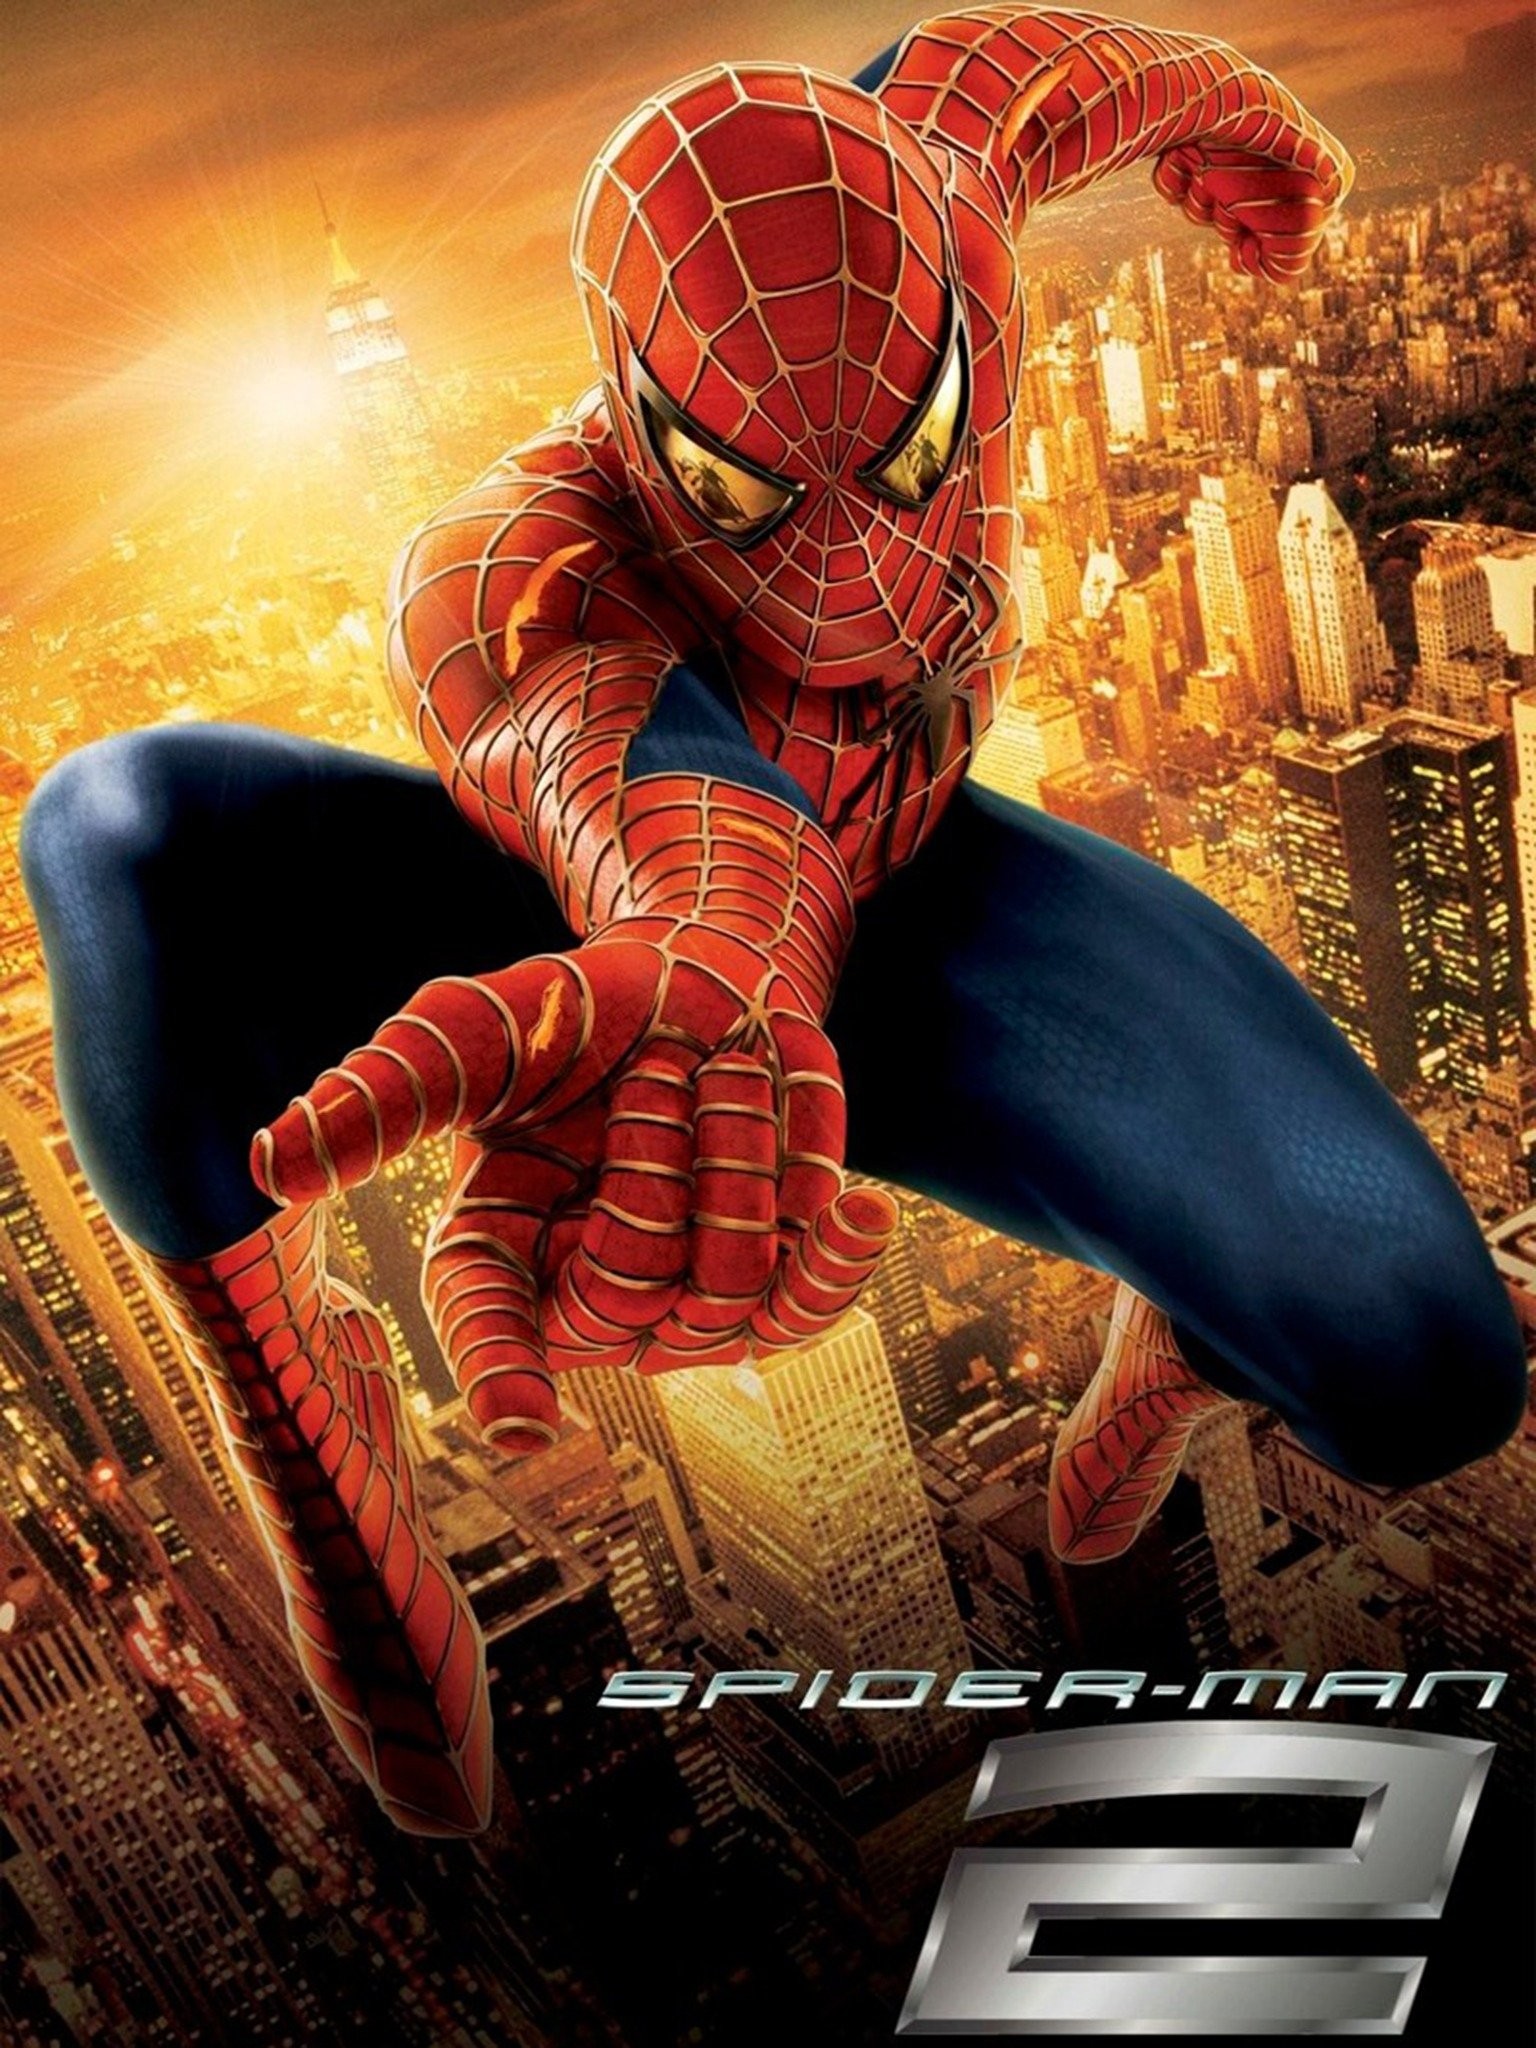 Spider man 2 movie online